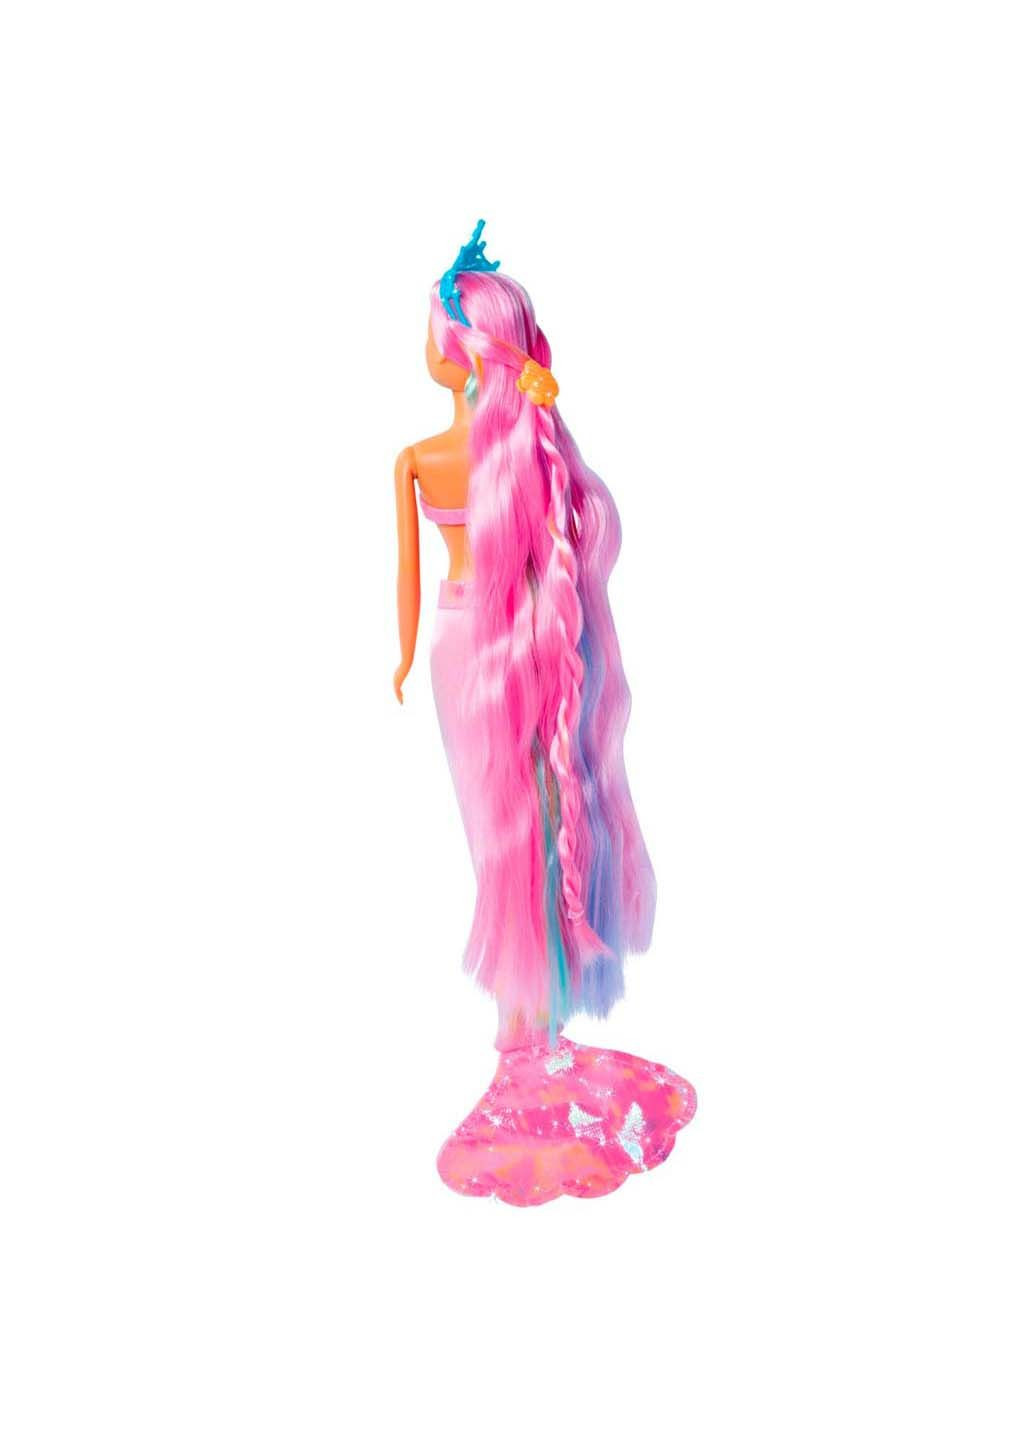 Кукла Steffi с аксессуарами русалочка Rainbow с блестящим хвостом Simba (278082587)